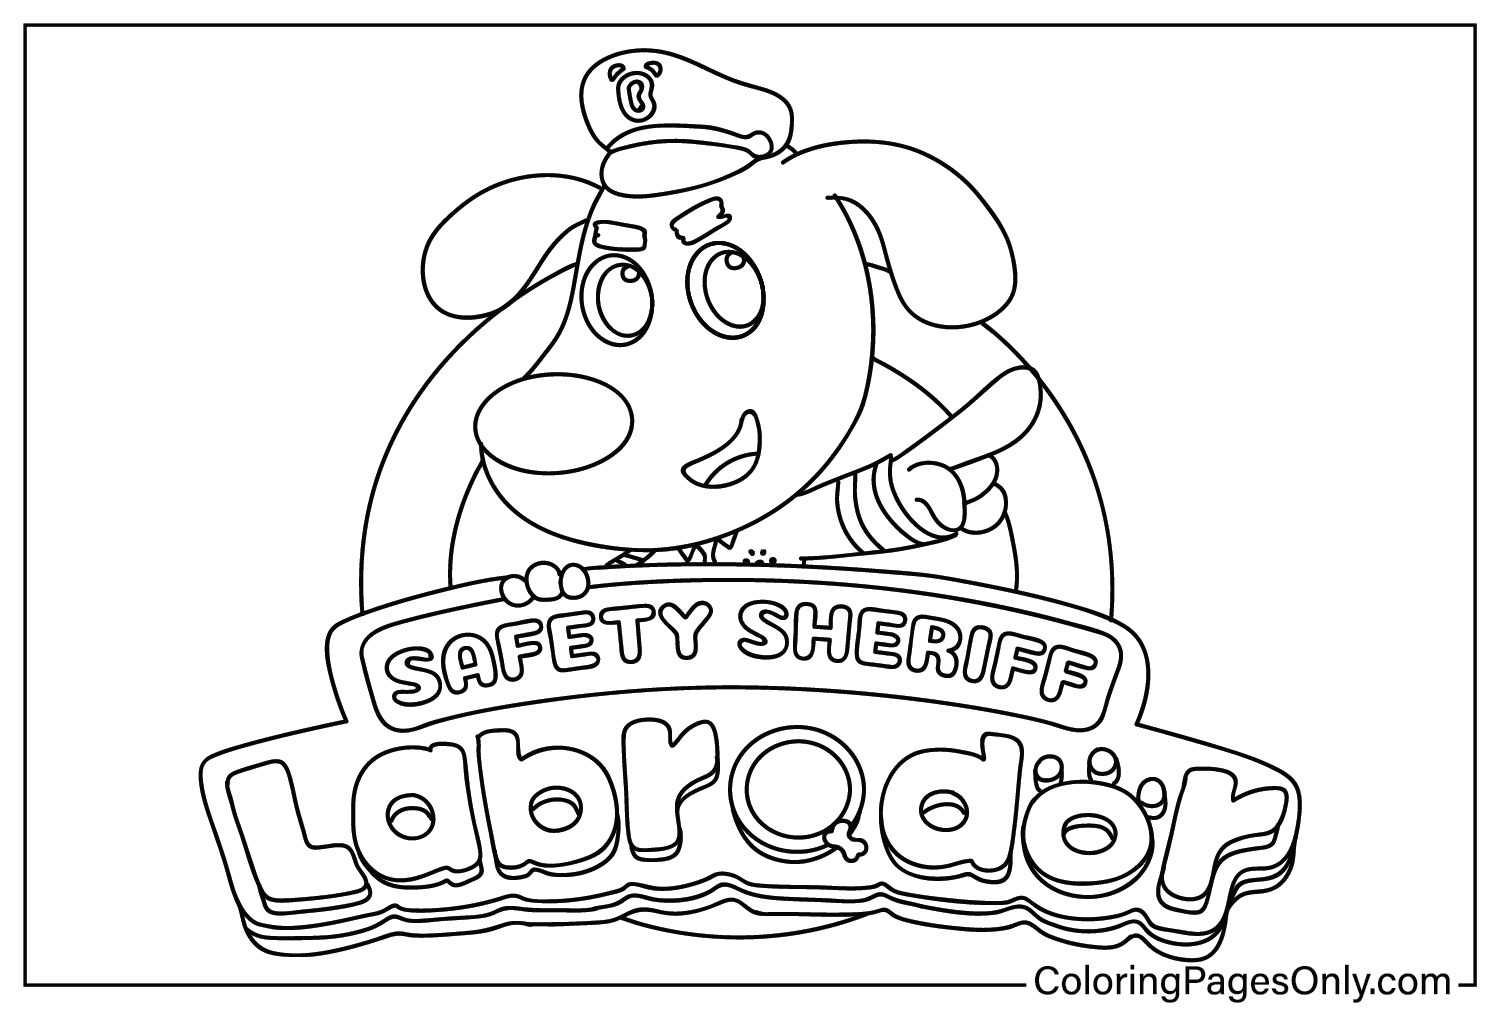 Imágenes para colorear del Sheriff de Seguridad Labrador para colorear del Sheriff de Seguridad Labrador